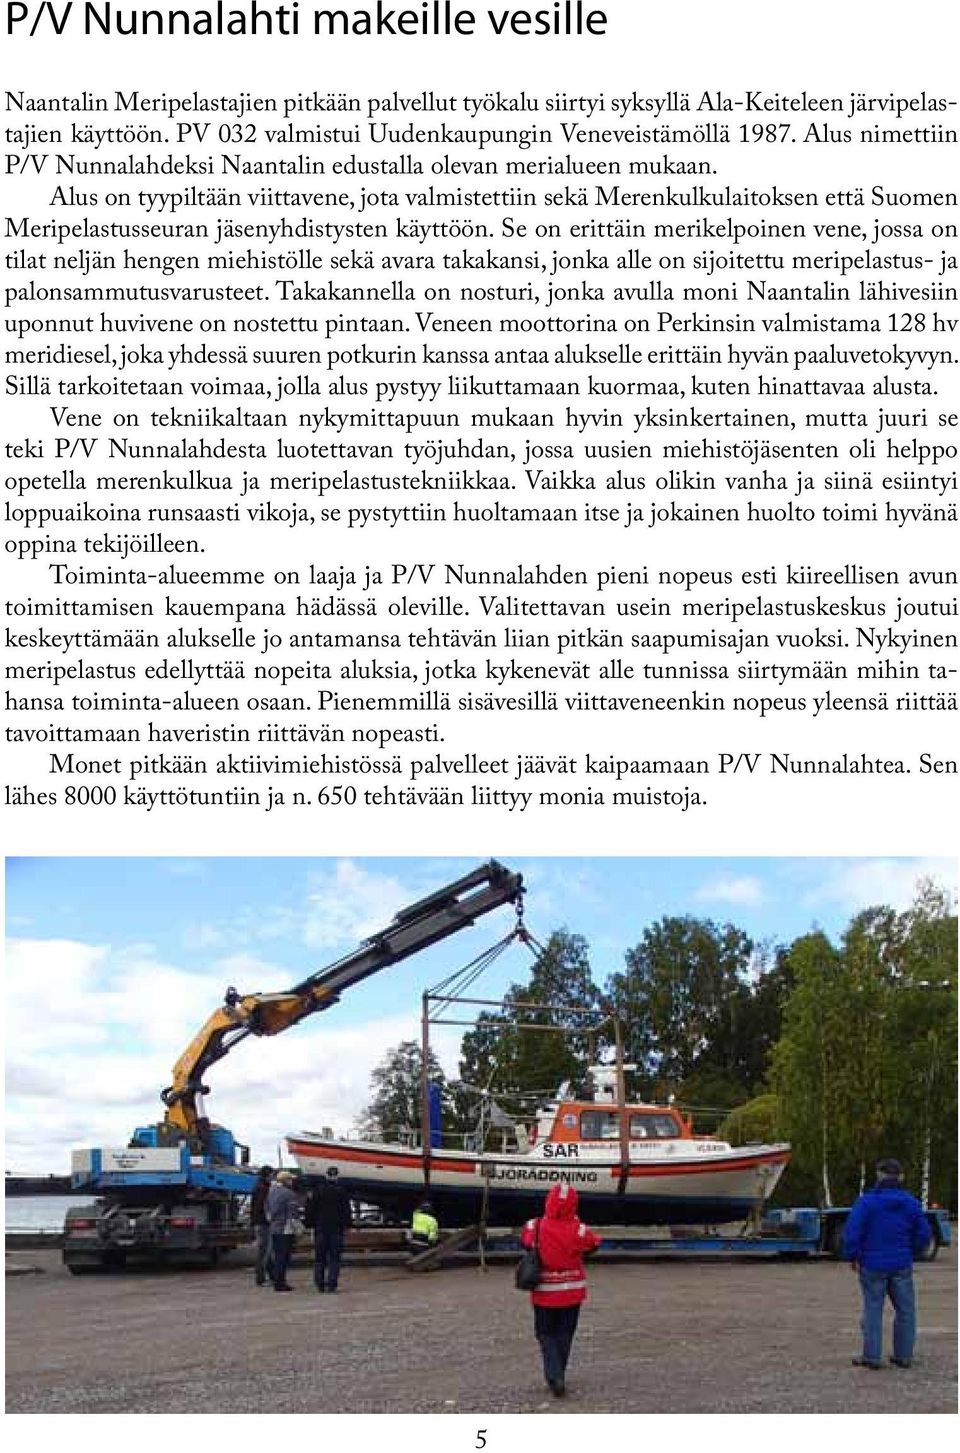 Alus on tyypiltään viittavene, jota valmistettiin sekä Merenkulkulaitoksen että Suomen Meripelastusseuran jäsenyhdistysten käyttöön.